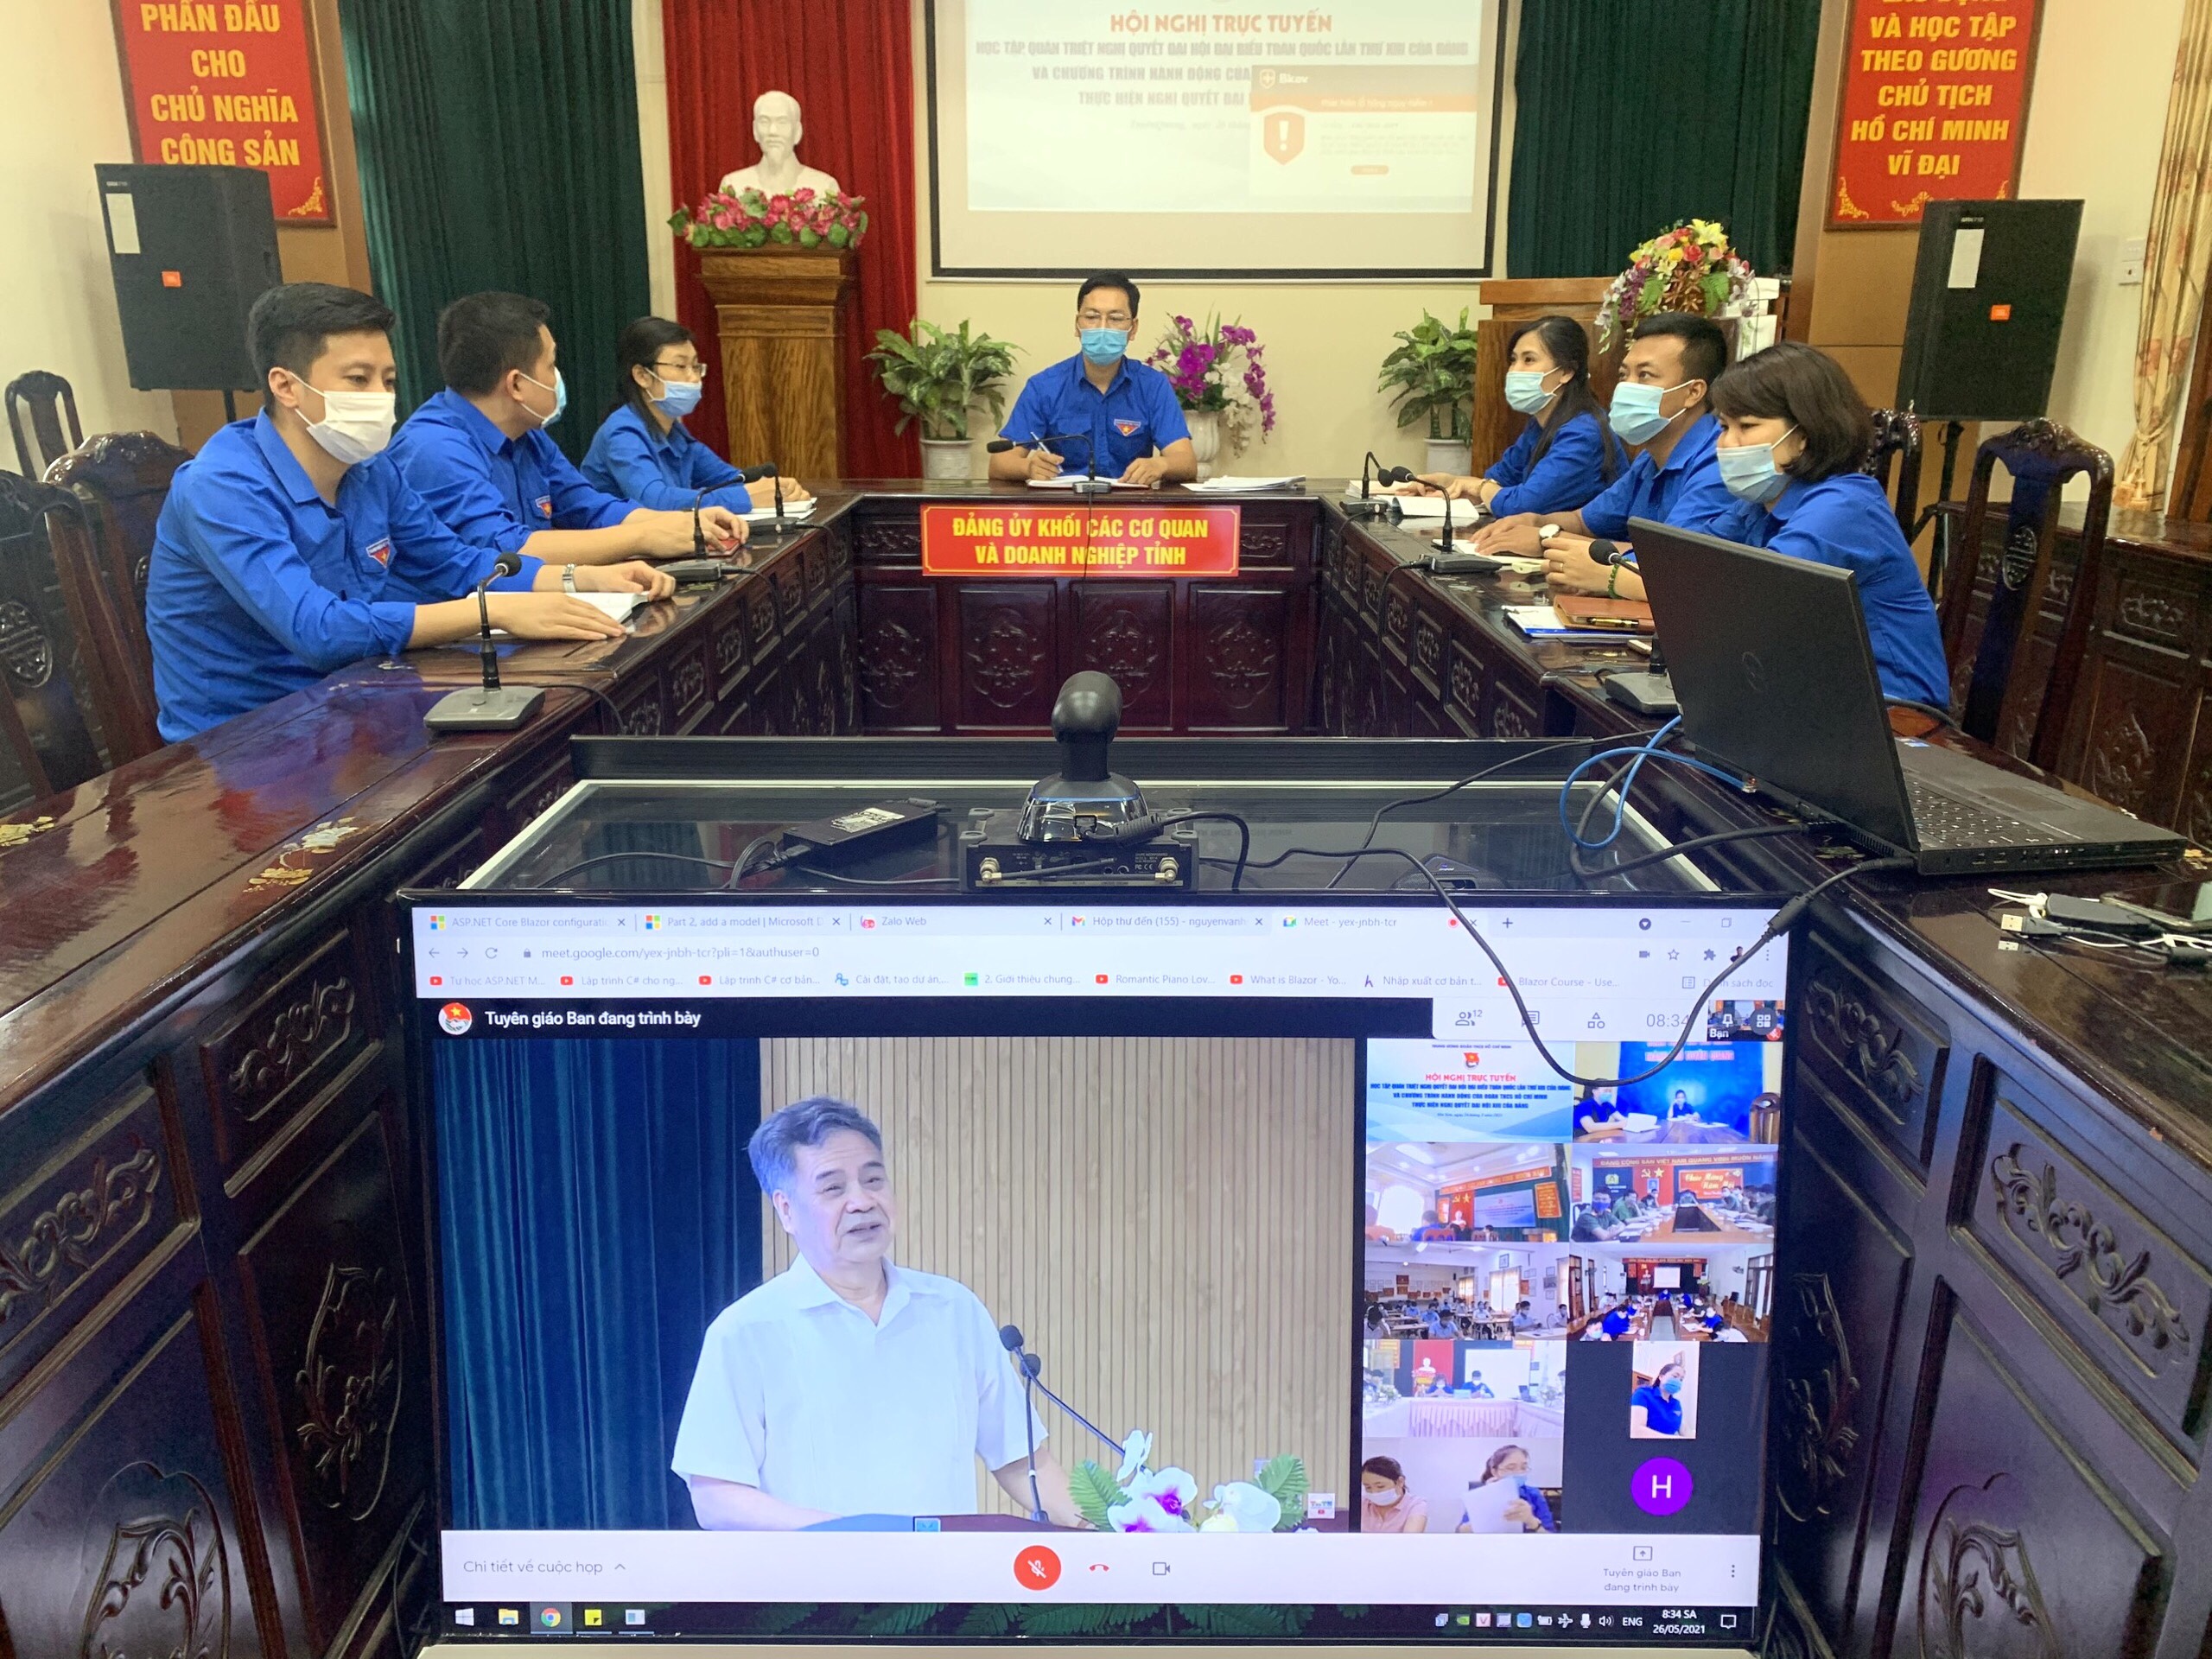 Trung ương Đoàn TNCS Hồ Chí Minh tổ chức Hội nghị trực tuyến học tập, quán triệt Nghị quyết Đại hội đại biểu toàn quốc lần thứ XIII của Đảng và triển khai Chương trình hành động của Đoàn thực hiện Nghị quyết Đại hội XIII của Đảng